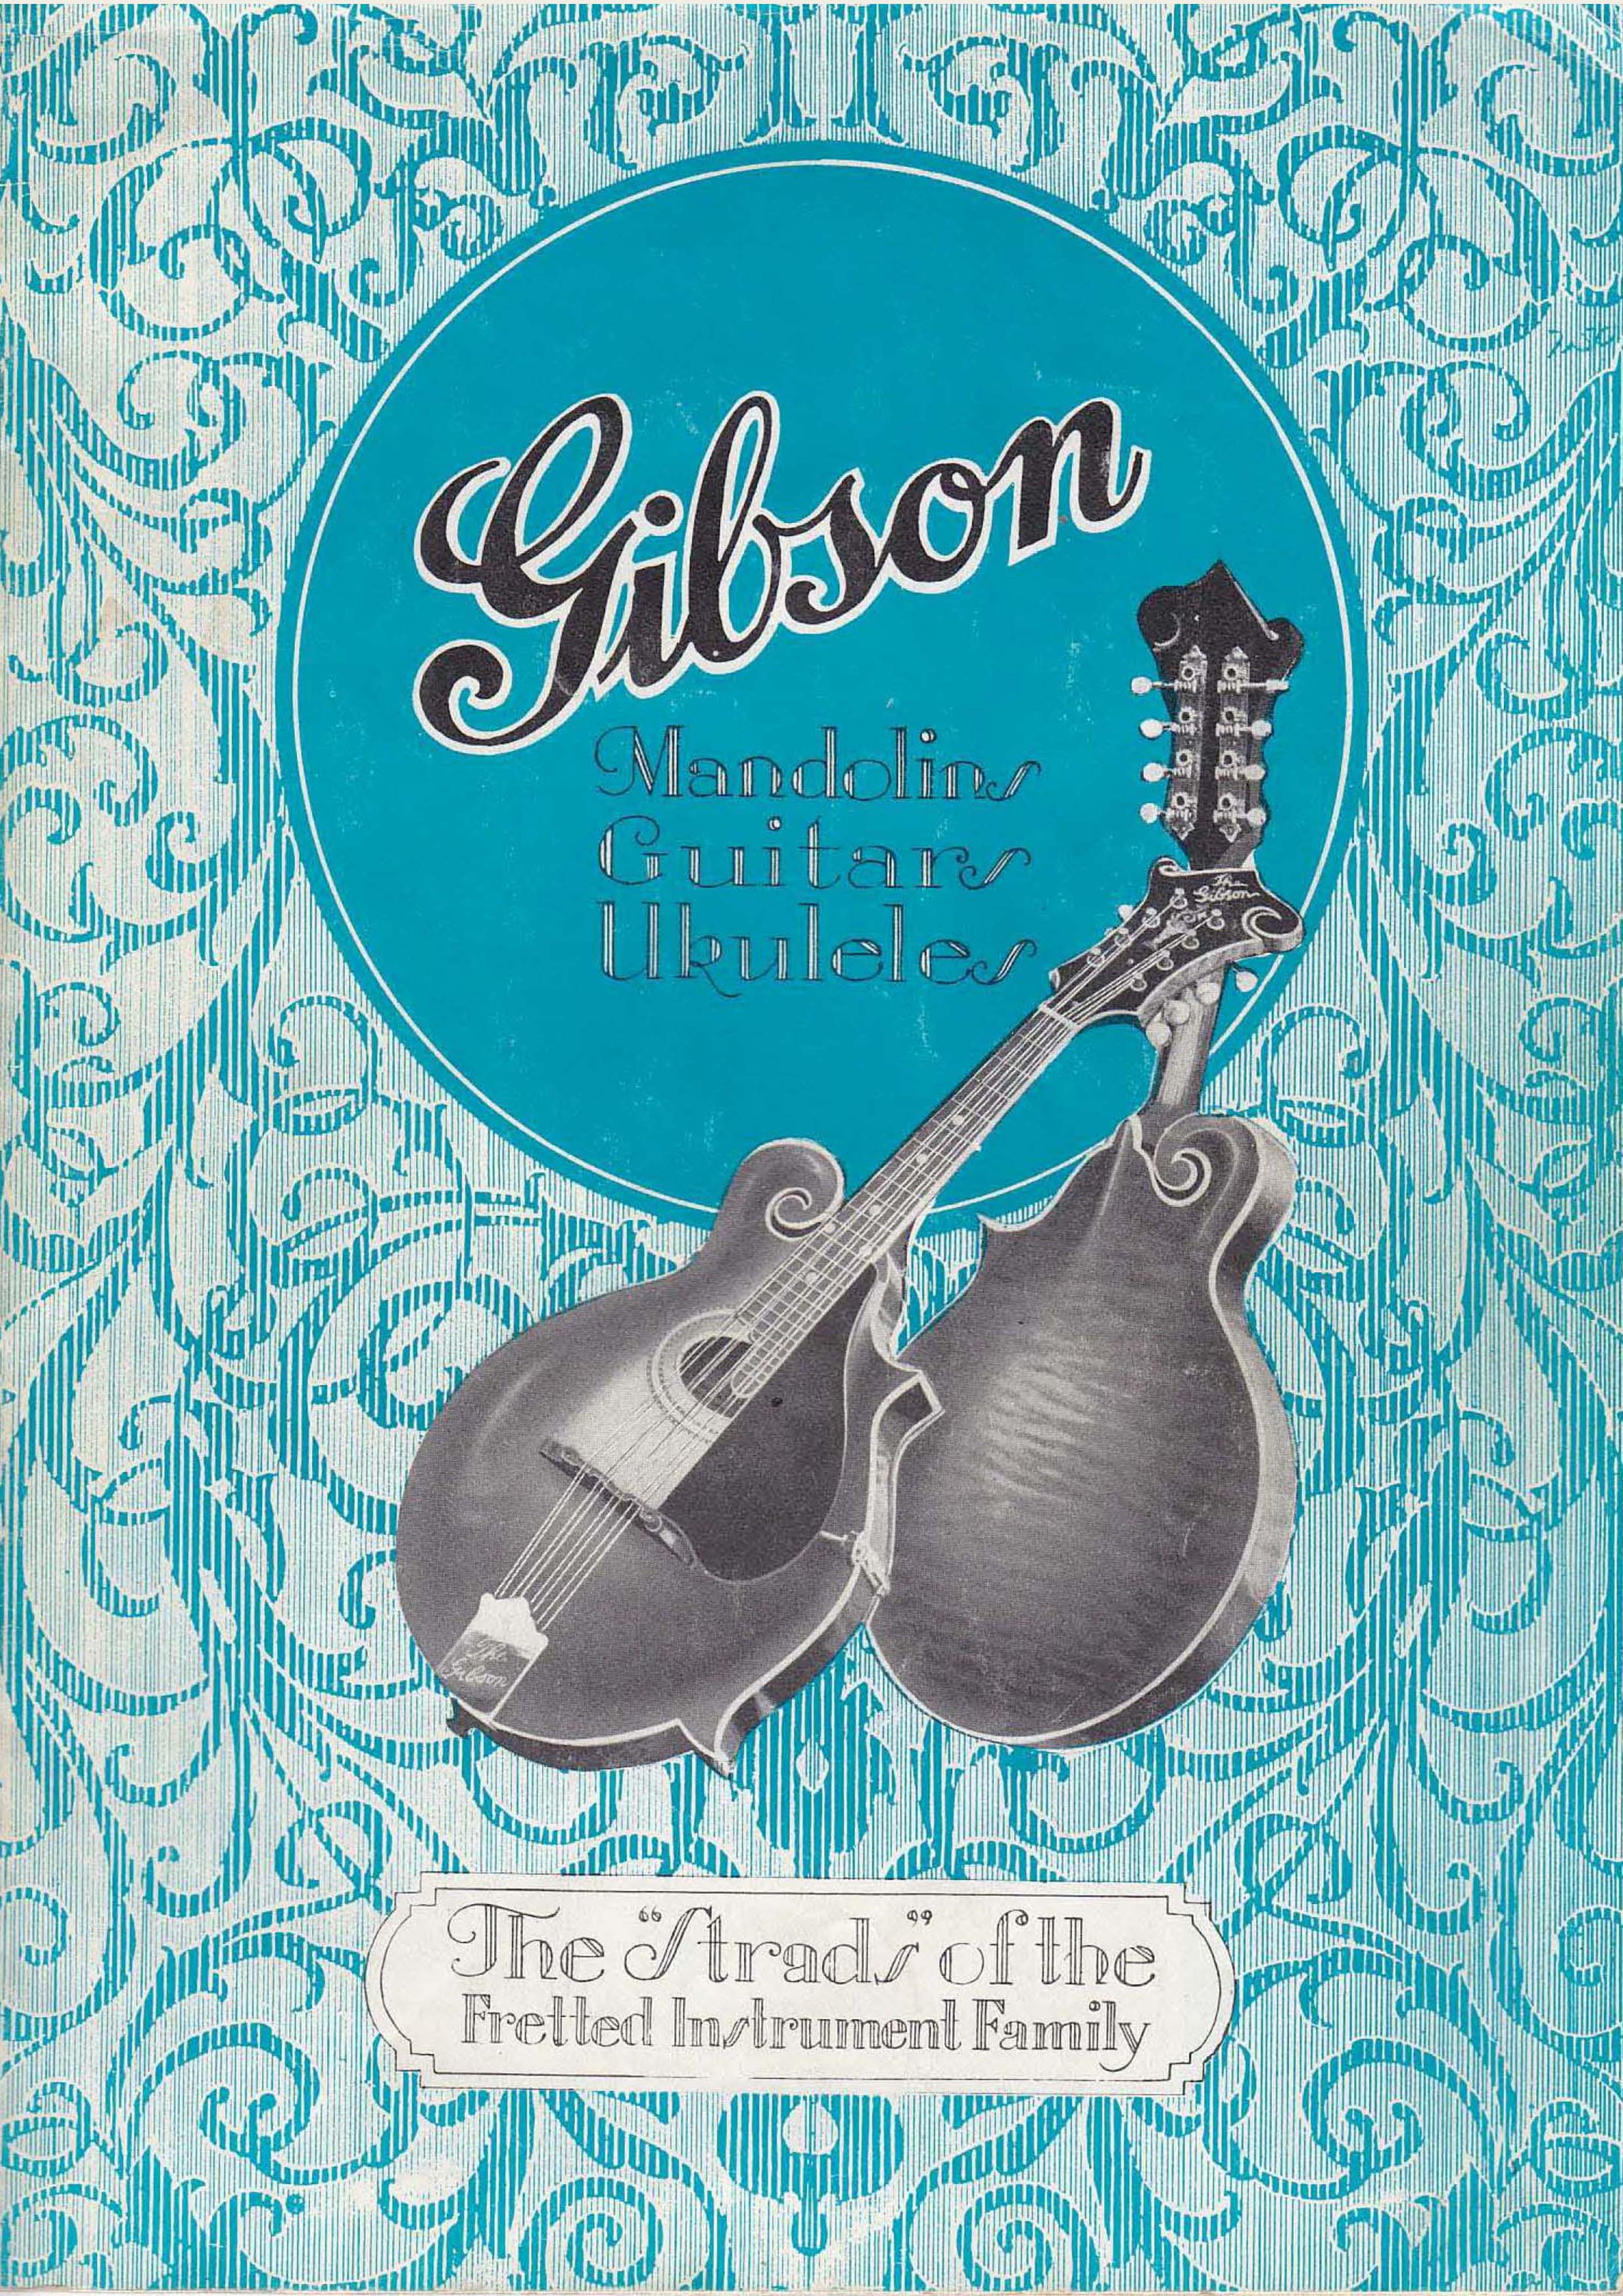 Gibson Catalog 1928